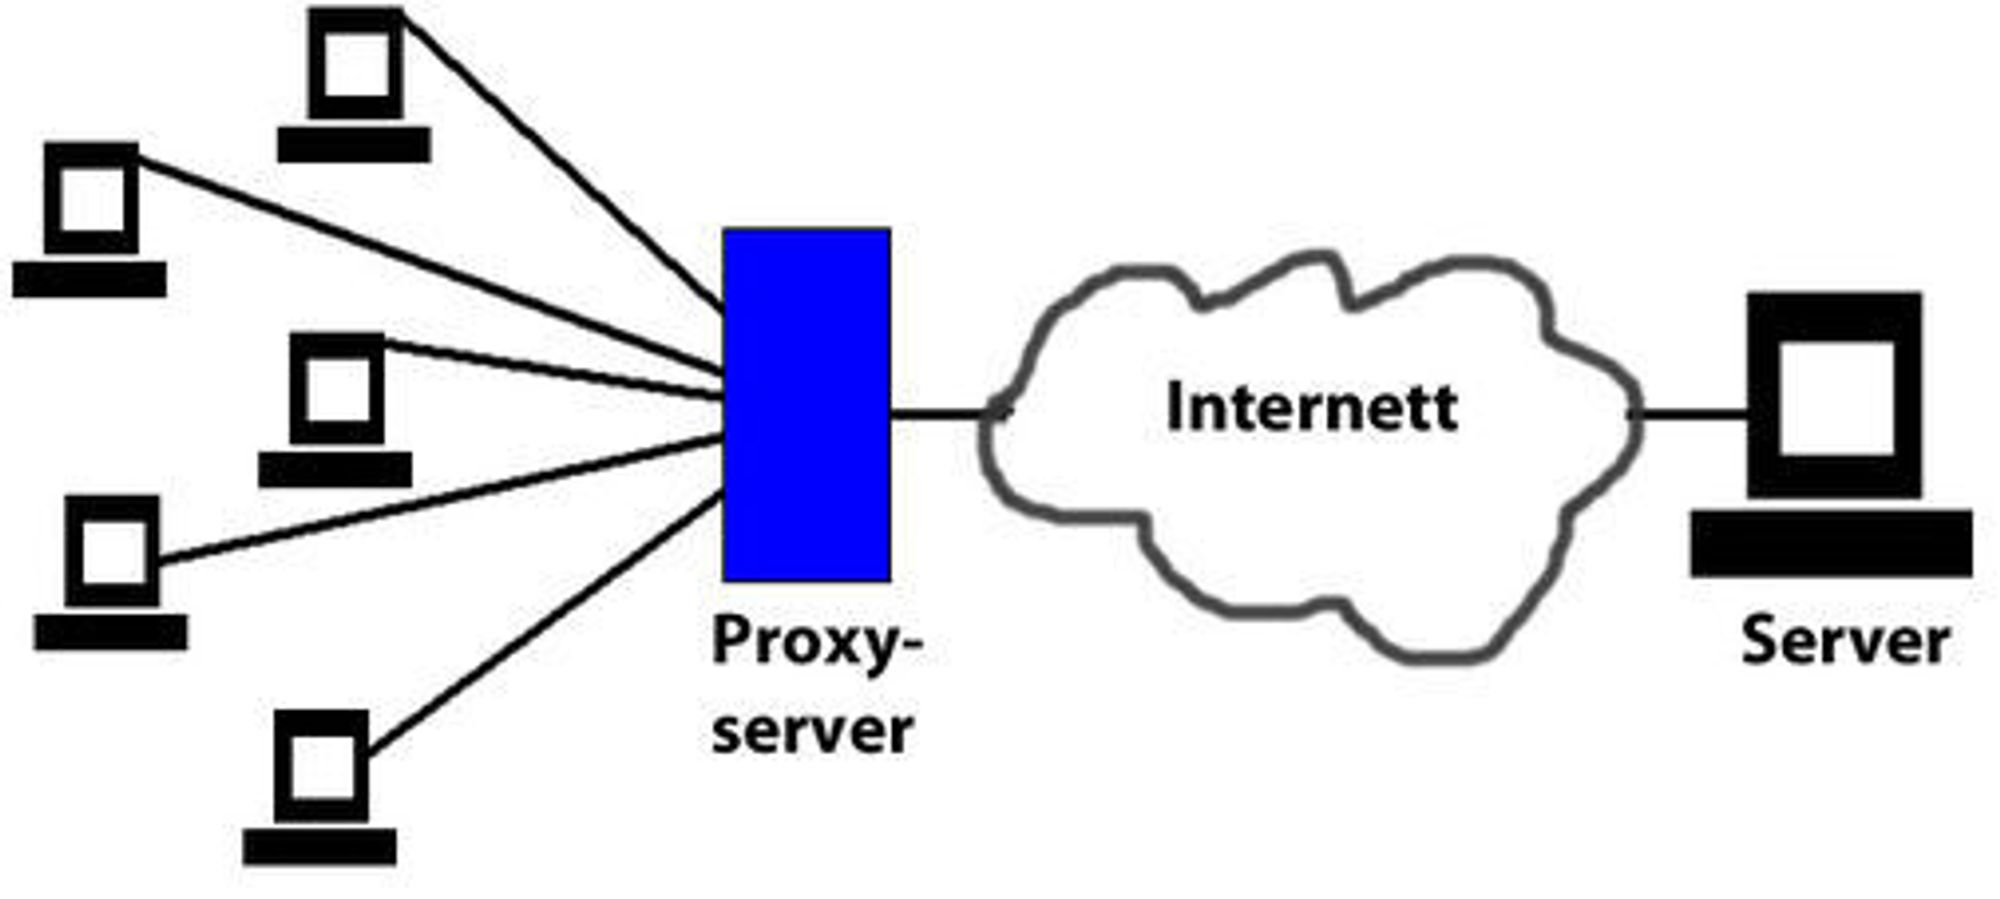 Proxy казахстан. Прокси сервер. Анонимный прокси сервер. НТТР прокси что такое. Сервер обозначение.